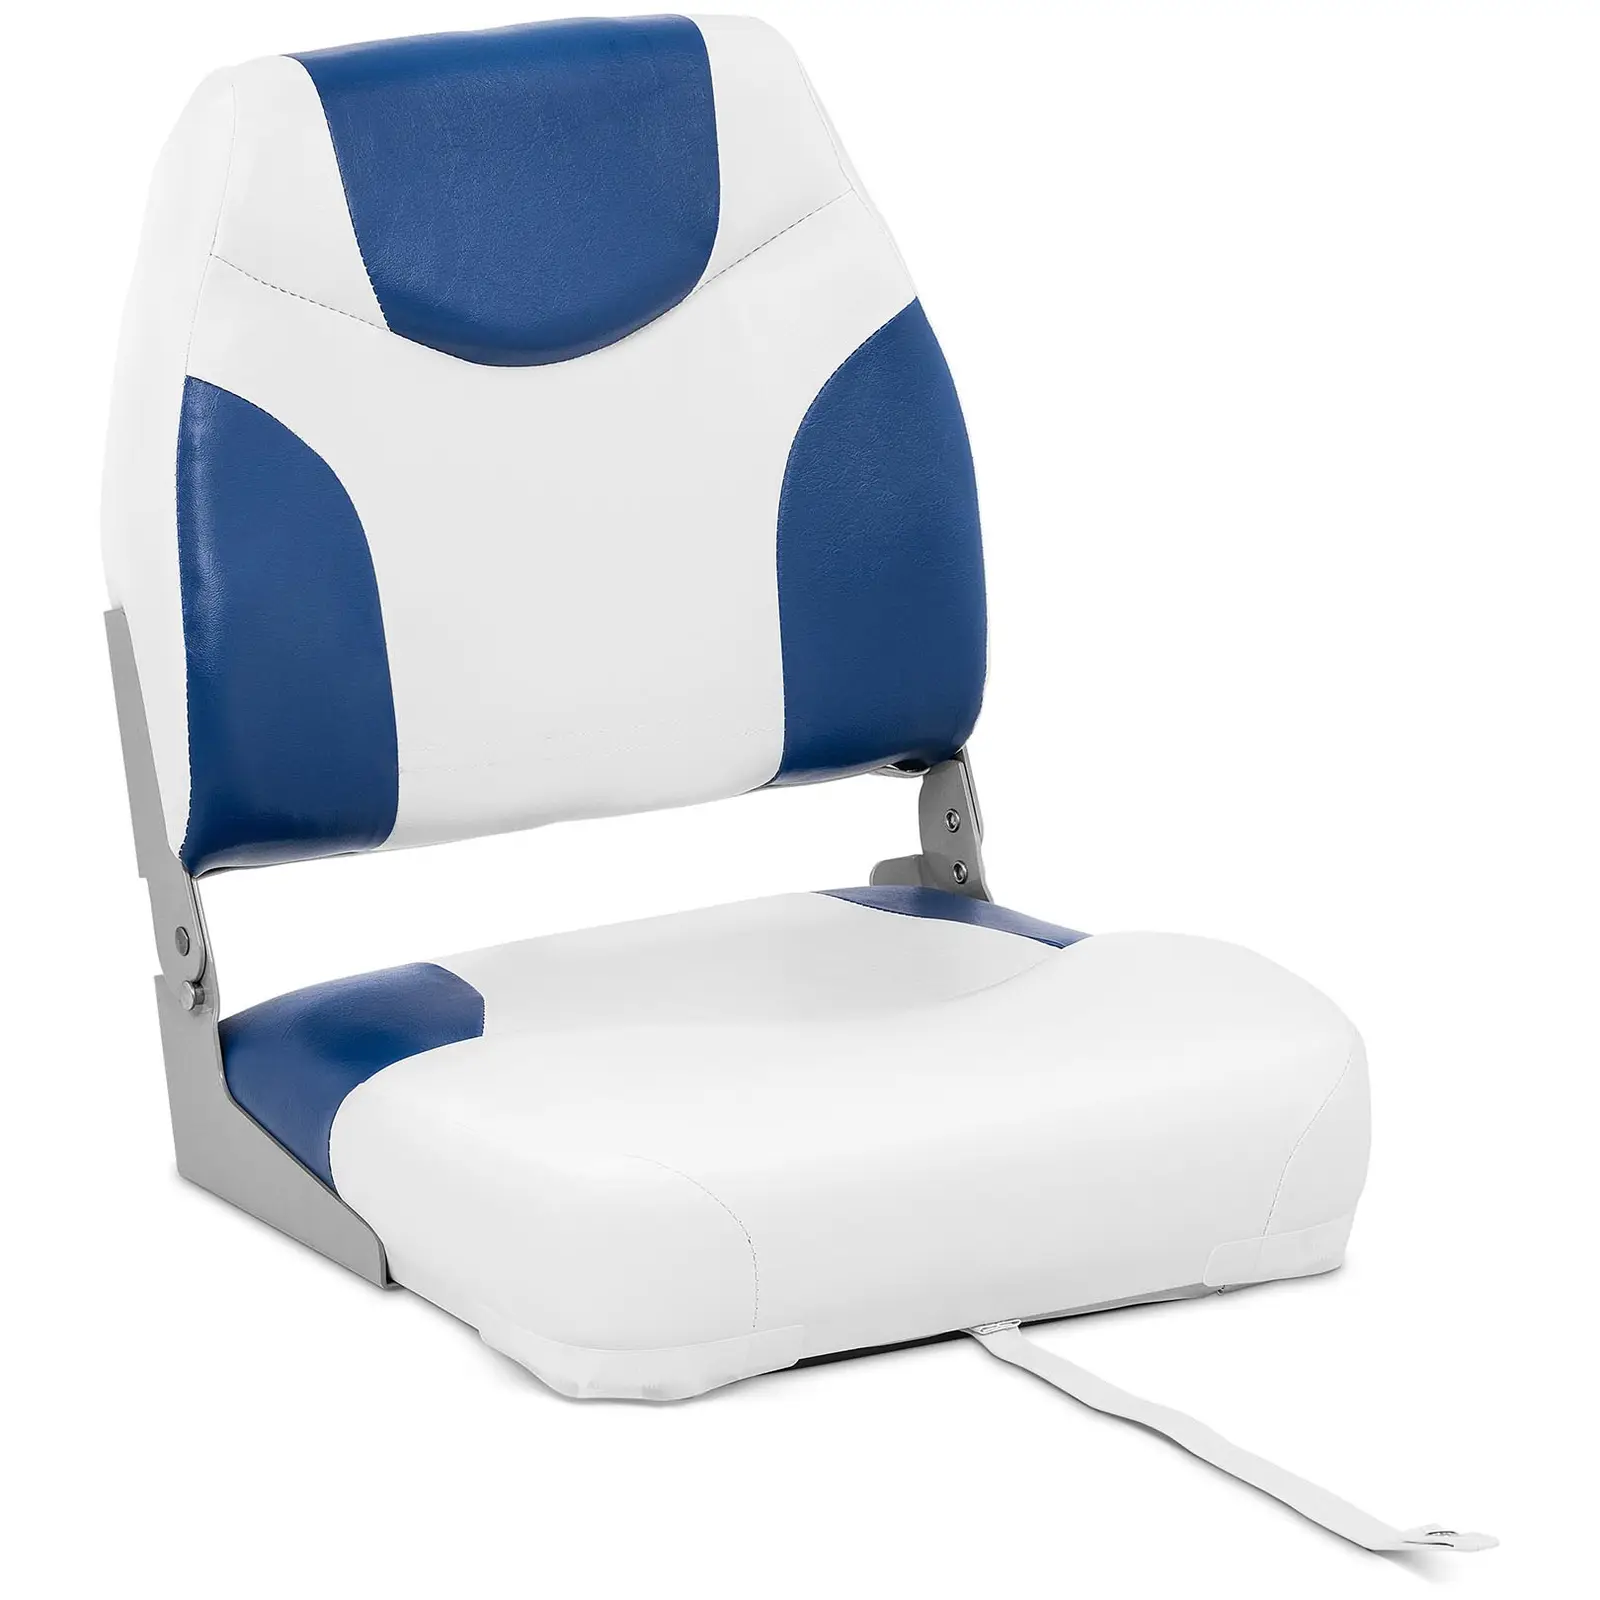 Bootssitz - 42 x 50 x 51 cm - Blue, White